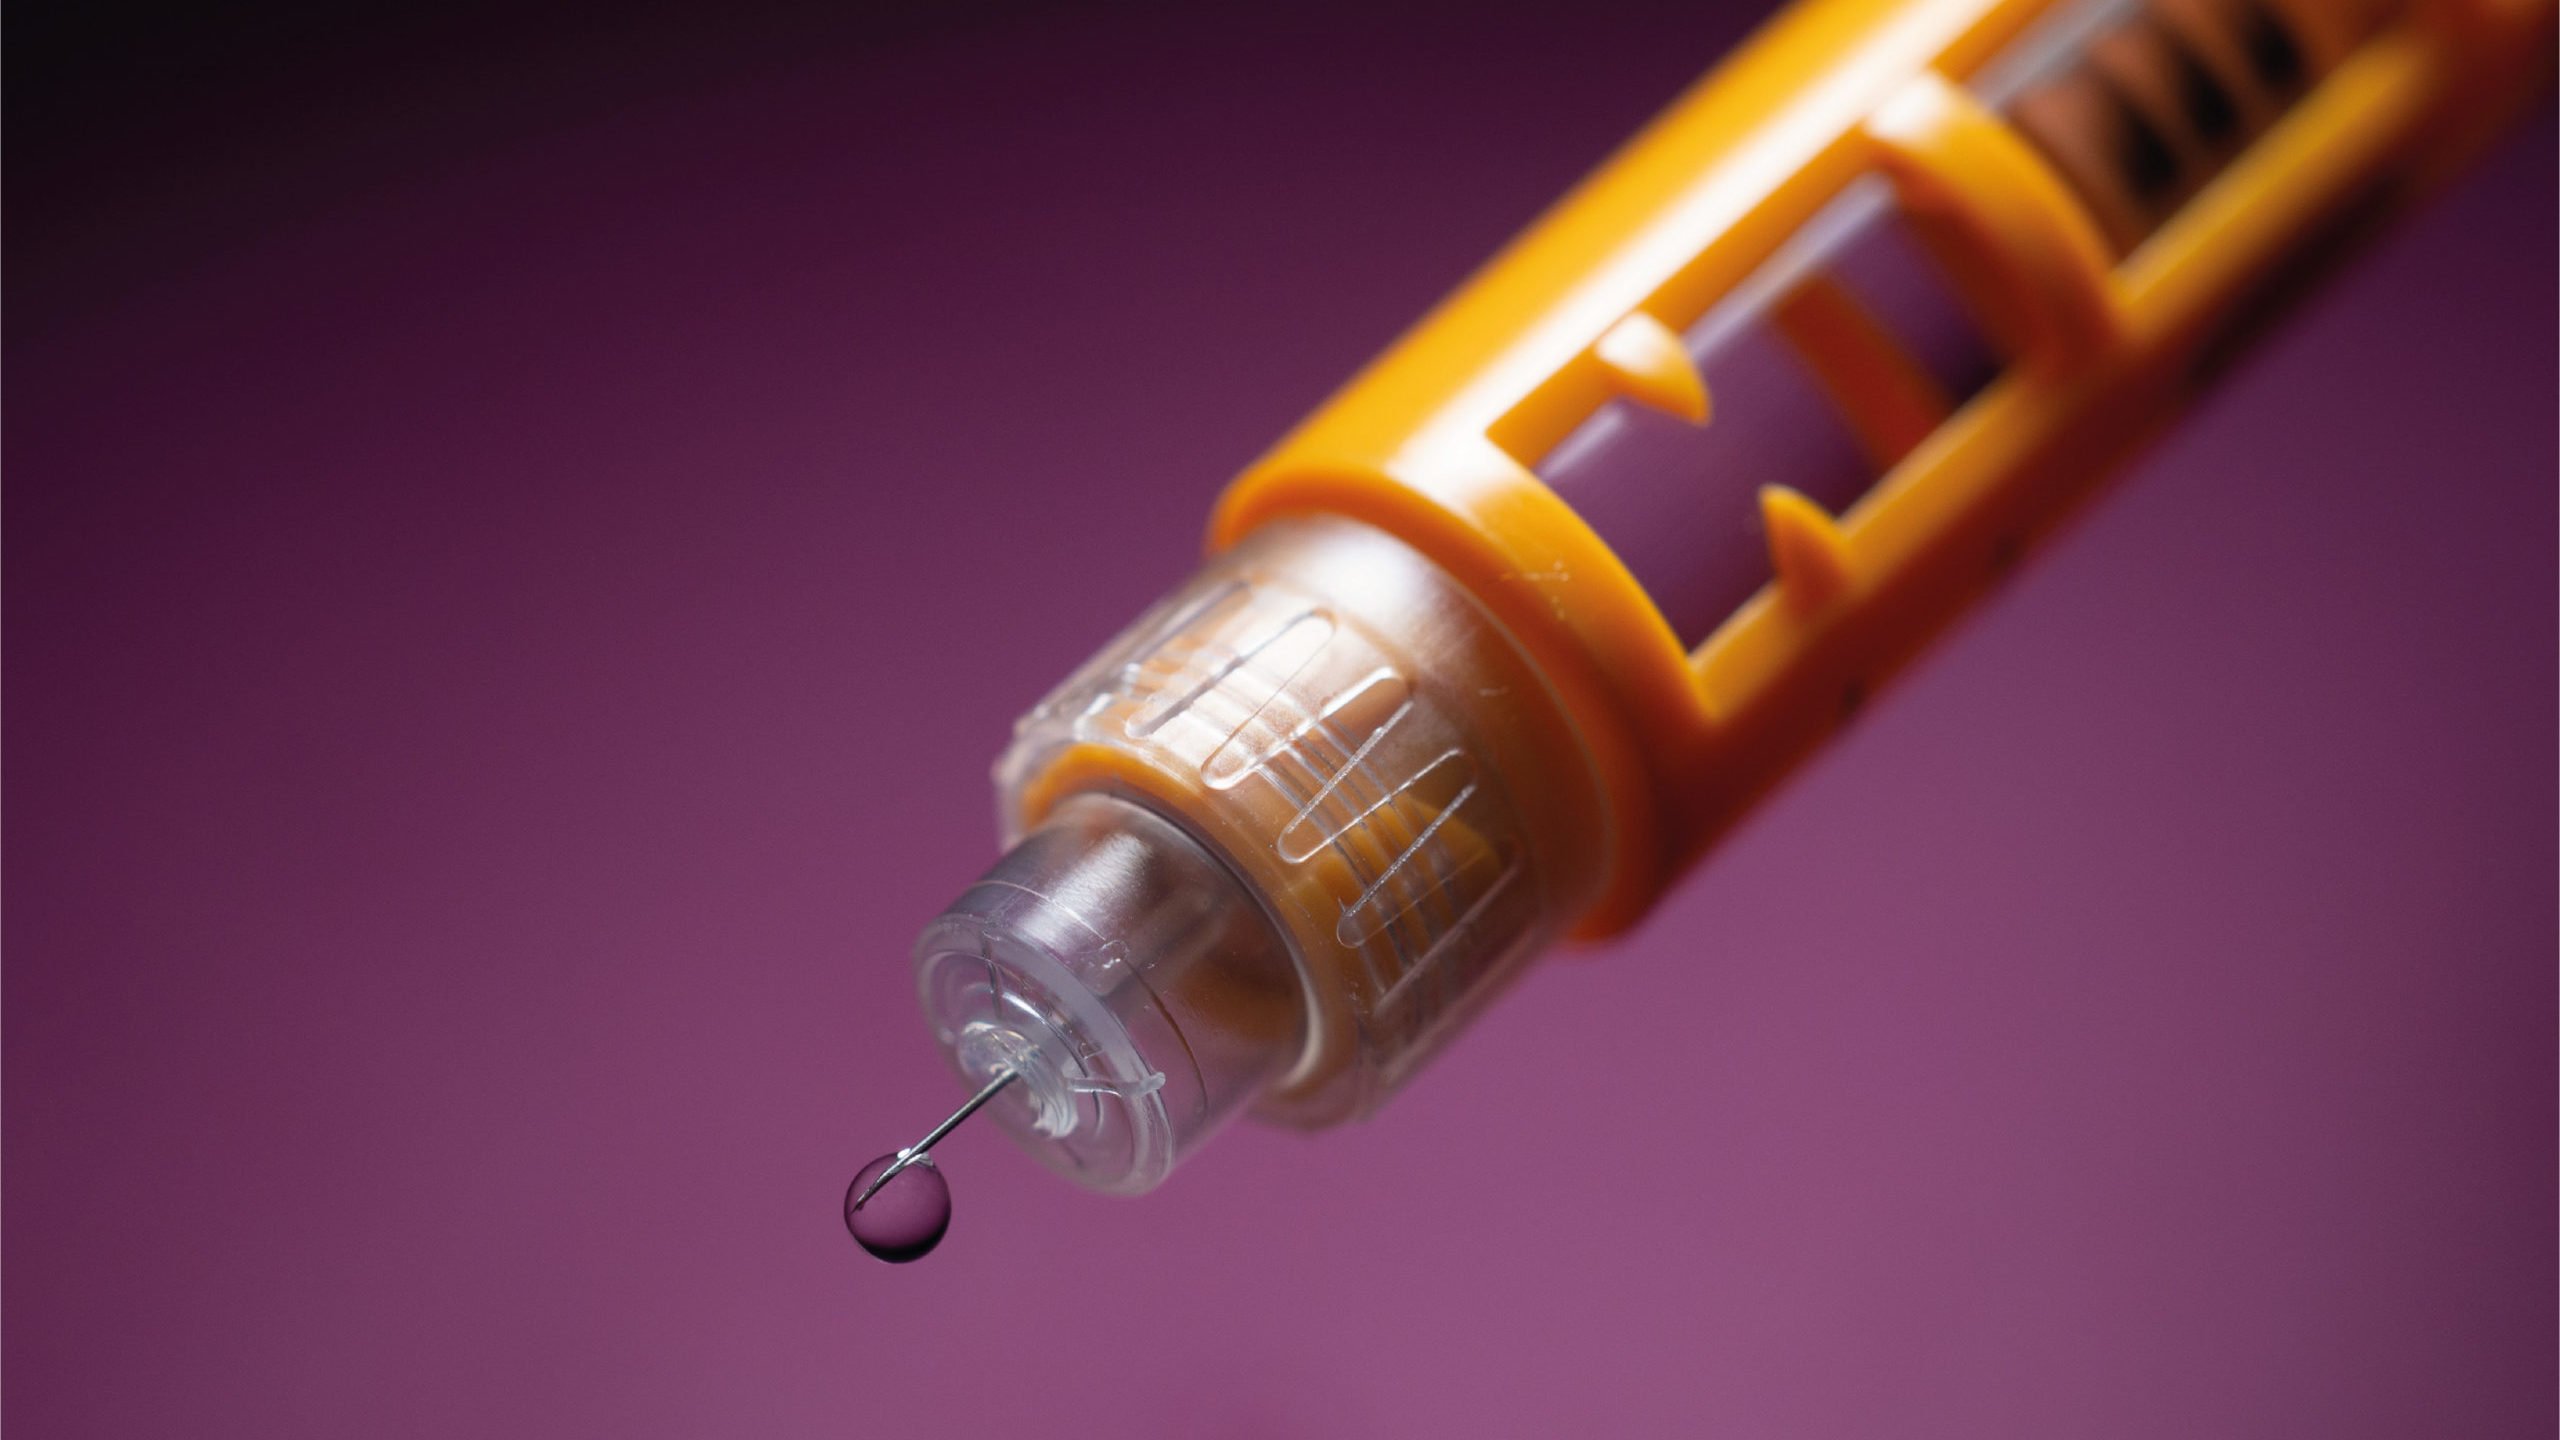 Insulina, la inyección que salva vidas cumple 100 años